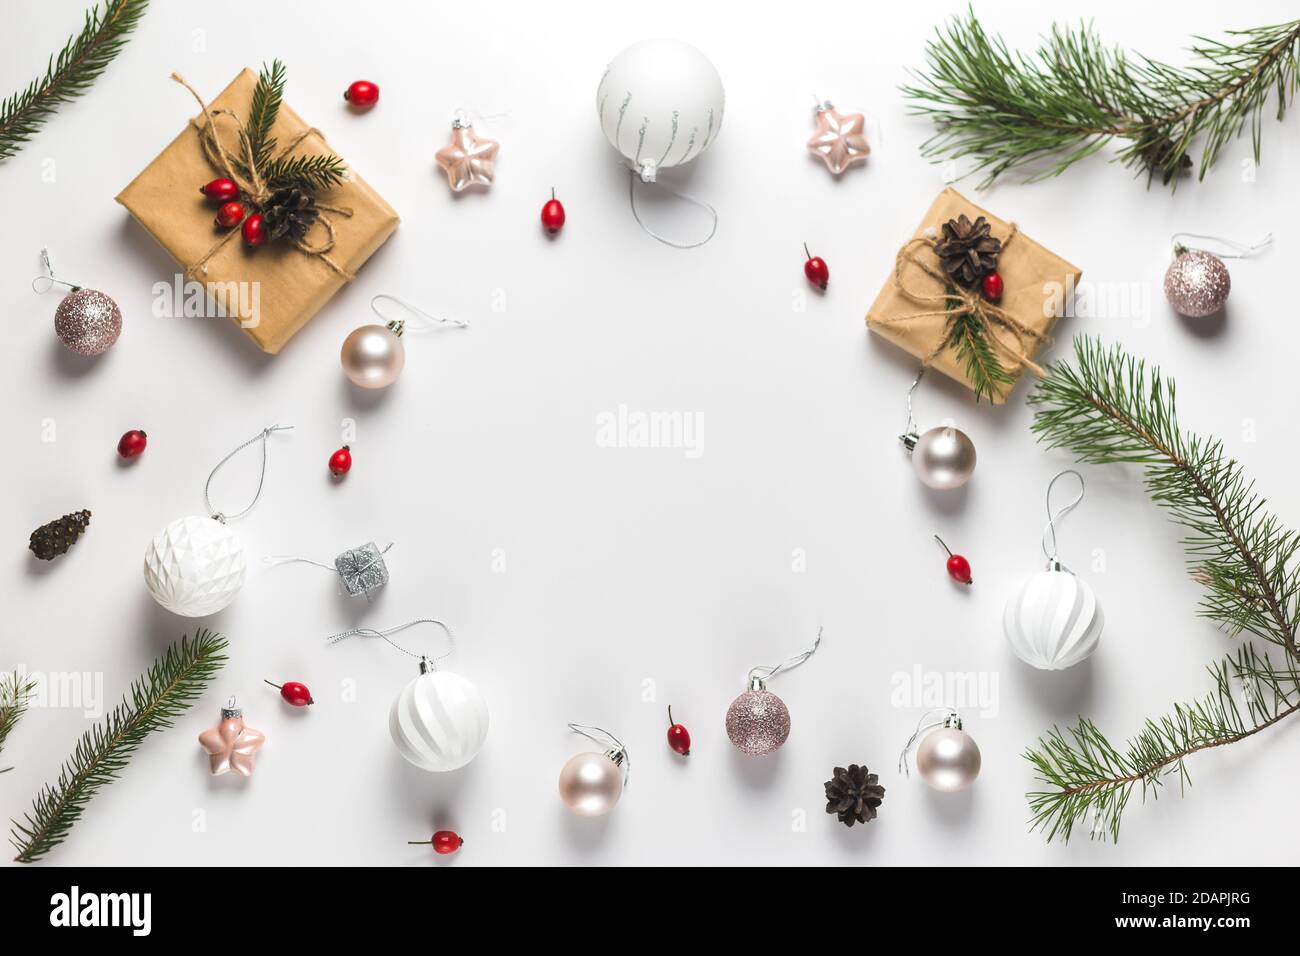 Composition de Noël. Cadre fait de cadeaux de noël, branches de pin, jouets sur fond blanc. Flat lay, vue de dessus, espace de copie. Banque D'Images